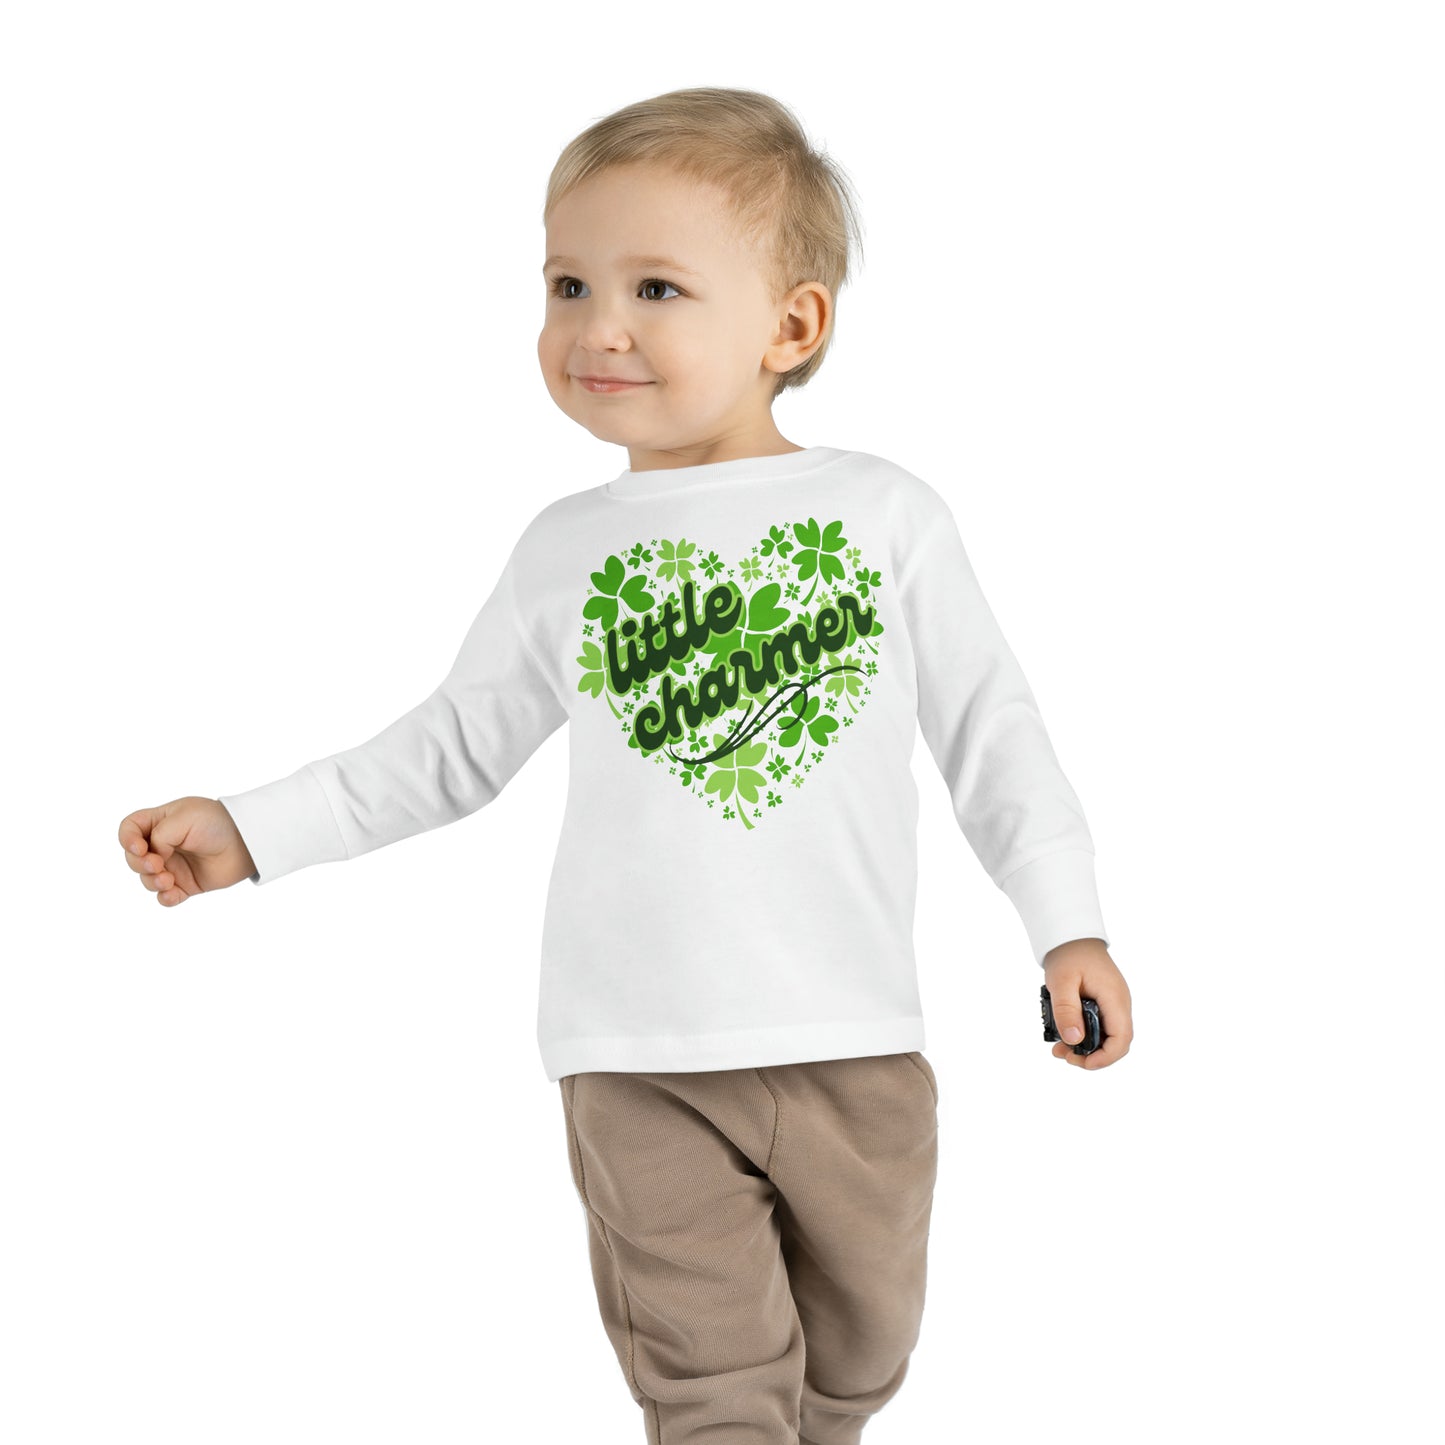 Little Charmer | Shamrock Heart Toddler Long Sleeve Tee for St. Patrick's Day